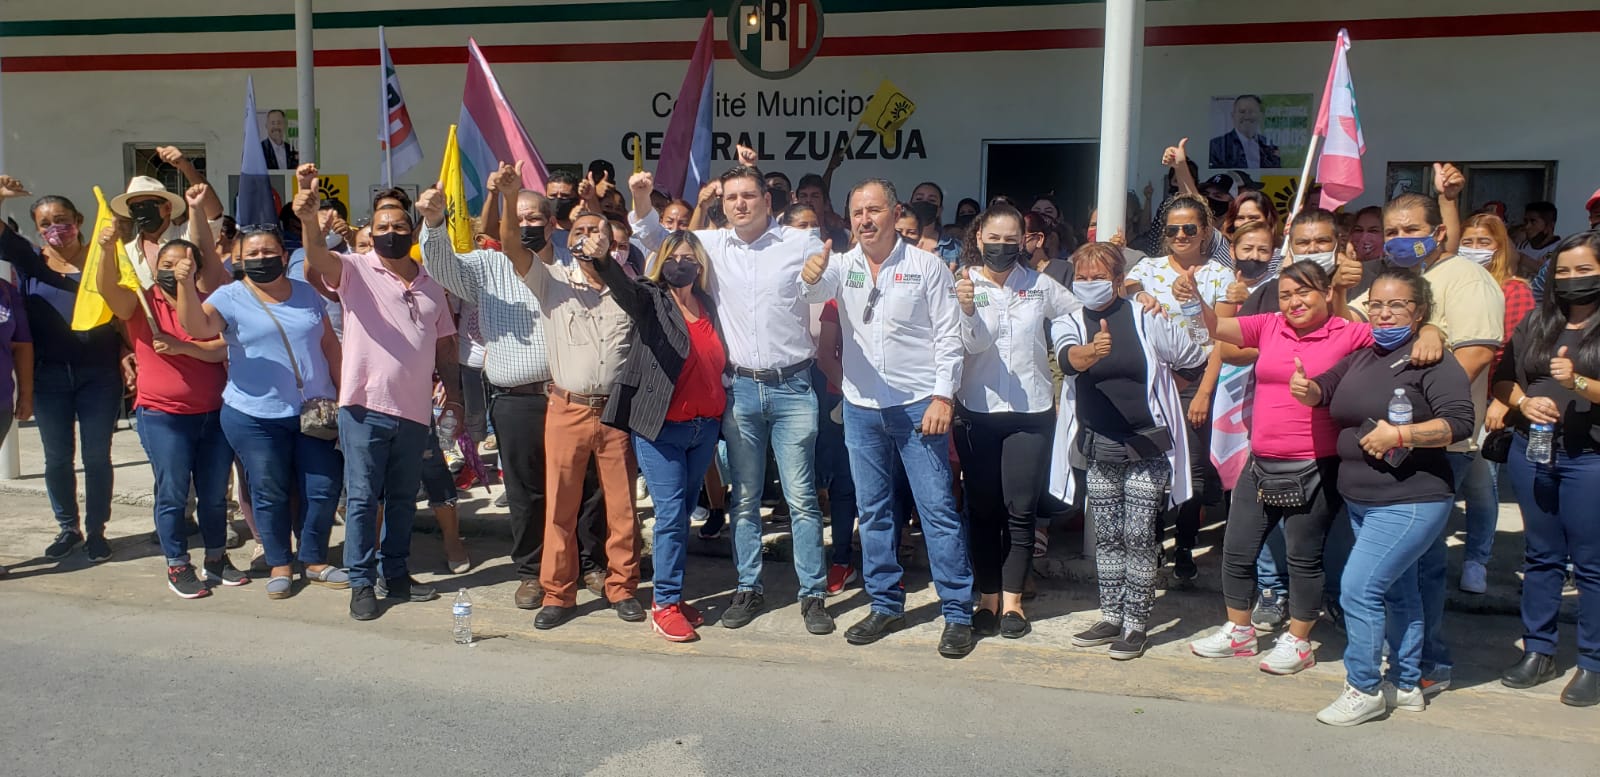 Declina candidato del PES a la alcaldía de Zuazua en favor de Jorge Martinez del PRI